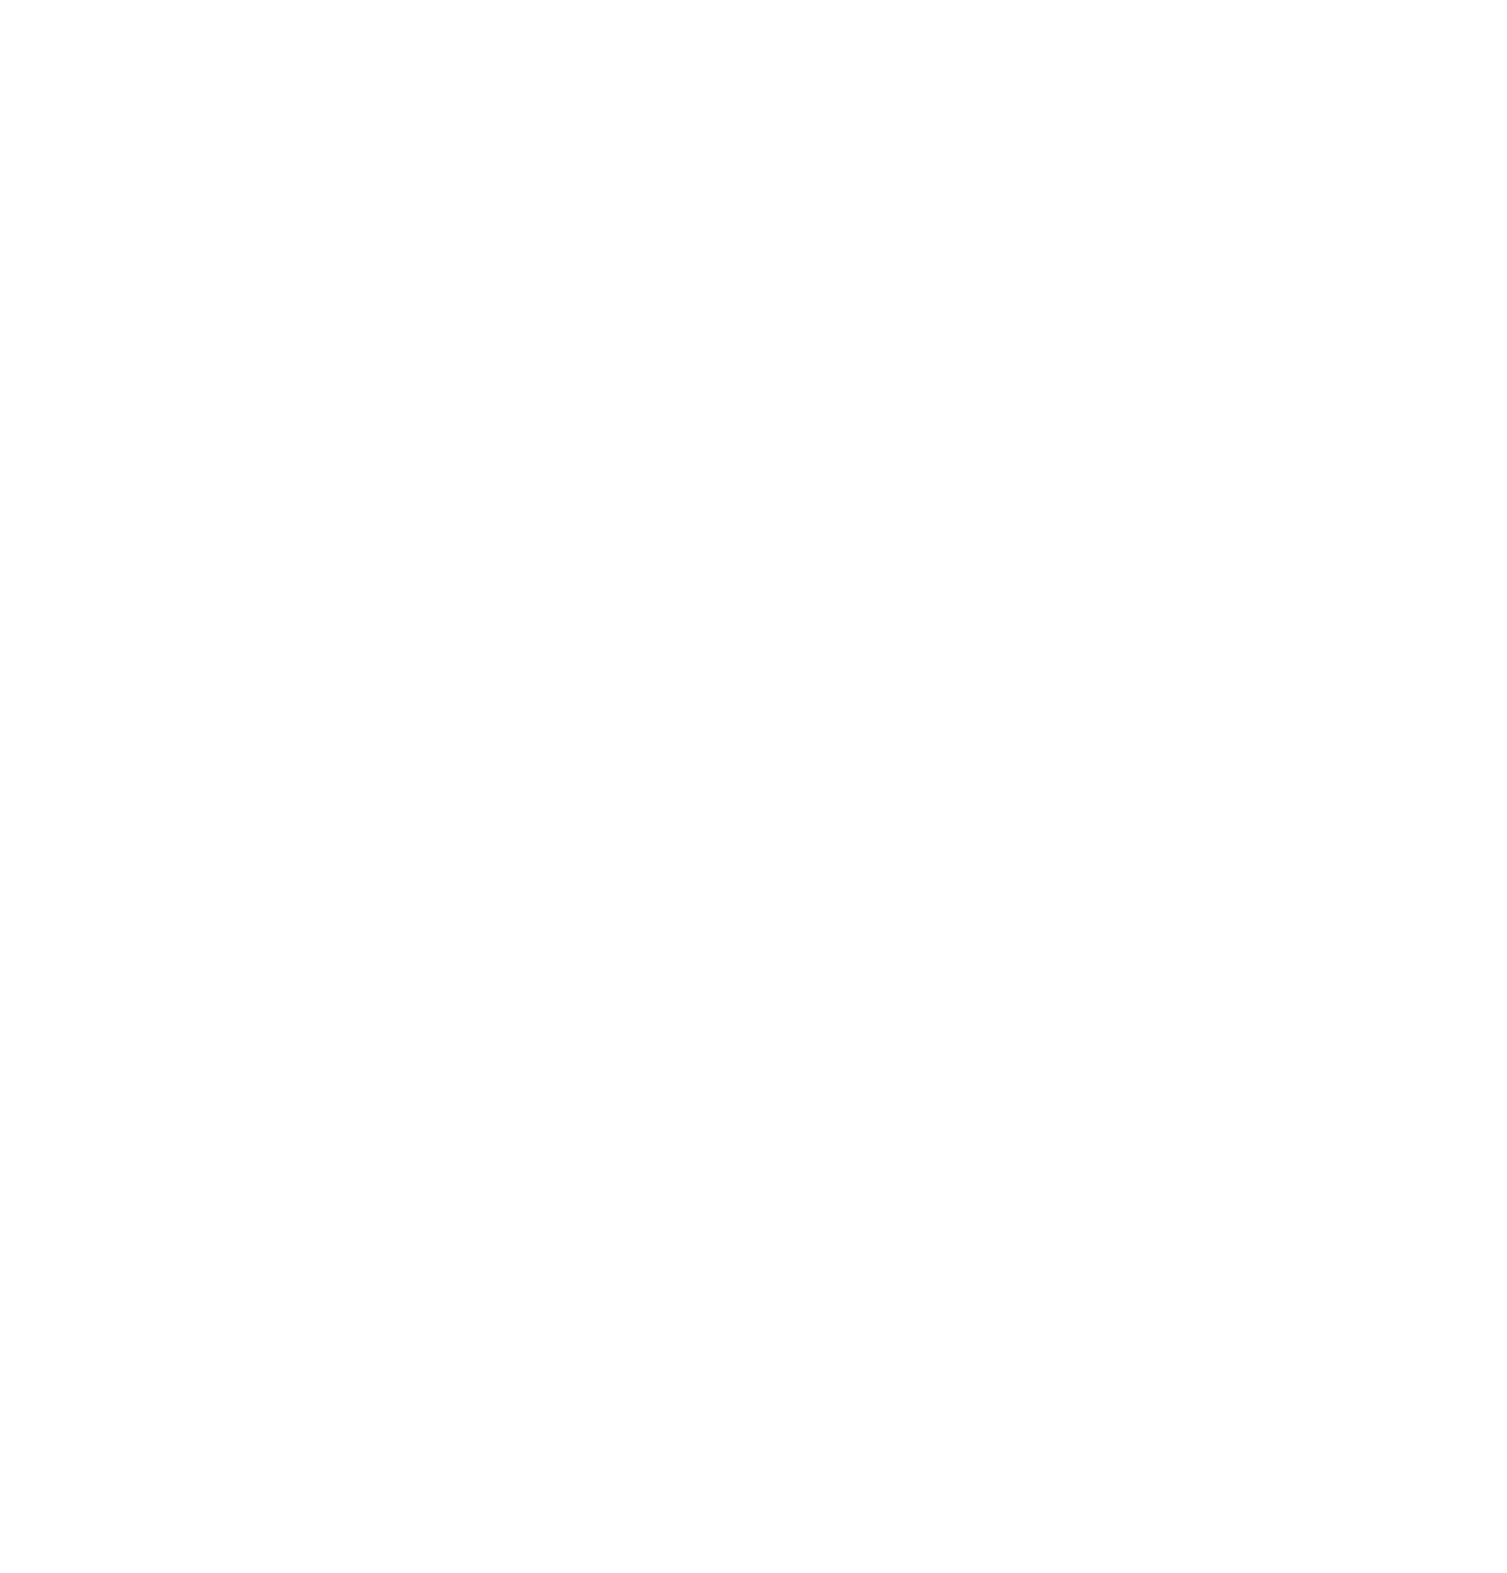 NV Bekaert logo for dark backgrounds (transparent PNG)